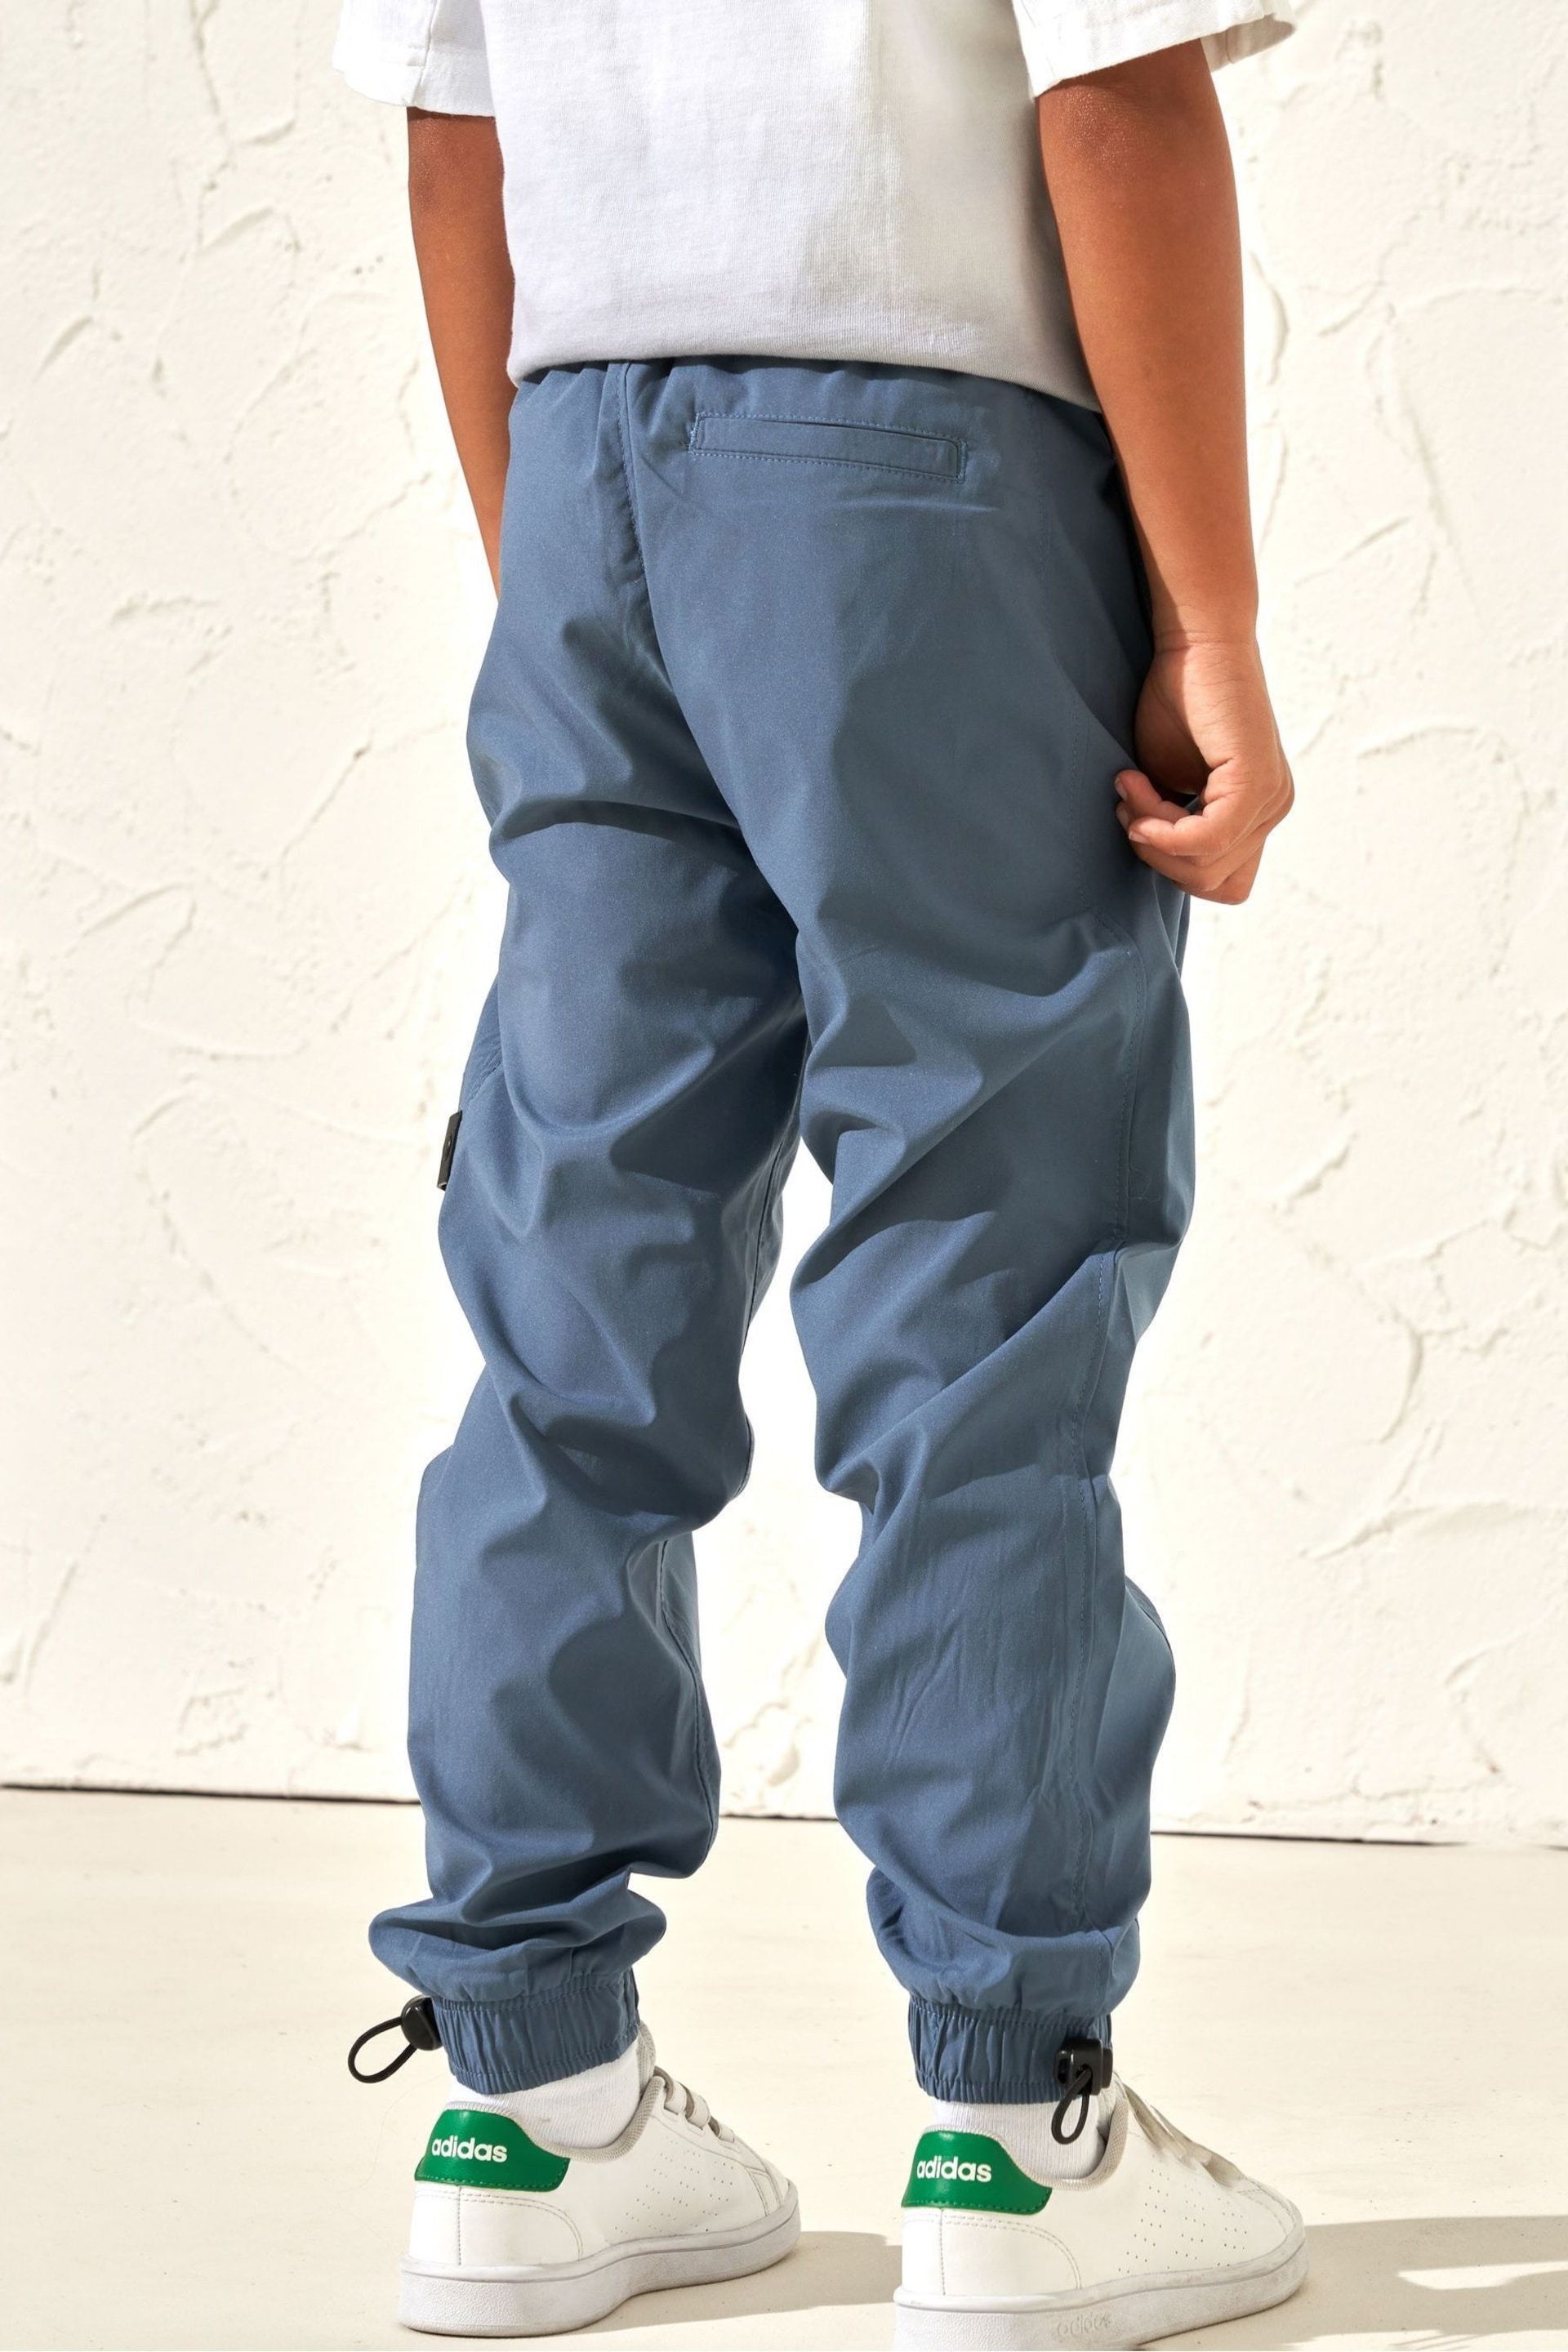 Angel & Rocket Blue Finn Stretch Poplin Trousers - Image 2 of 6